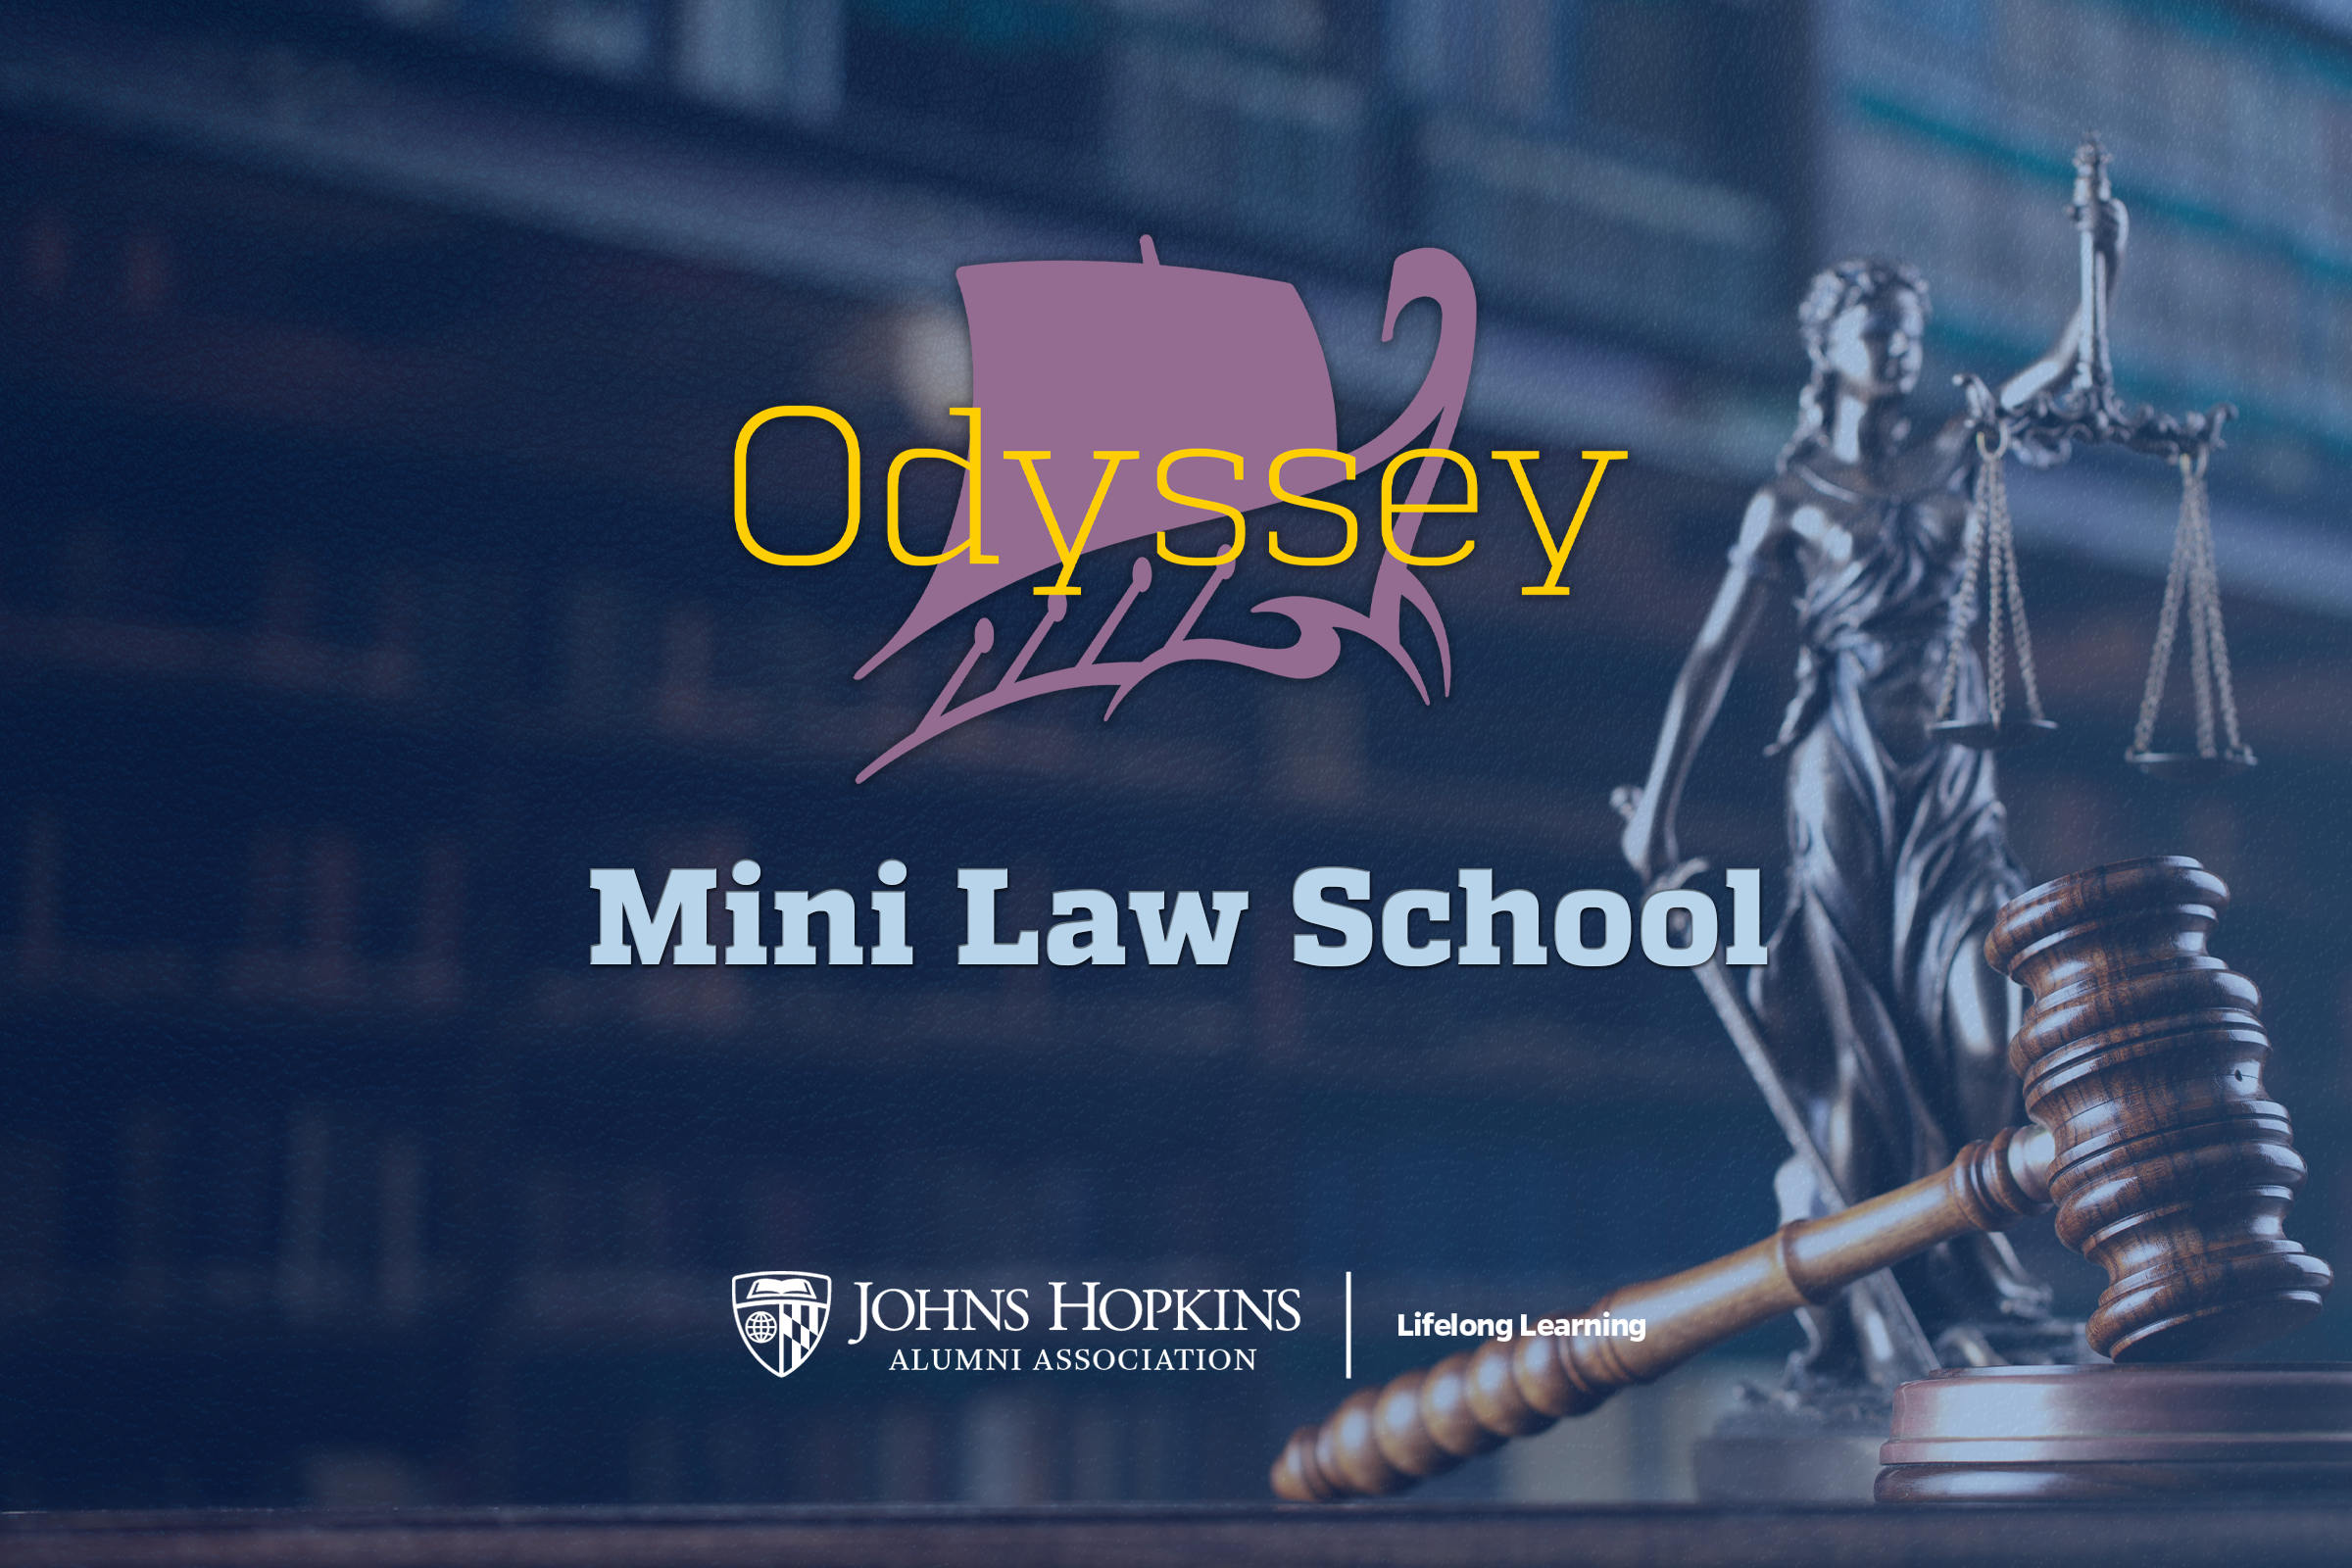 Mini Law School